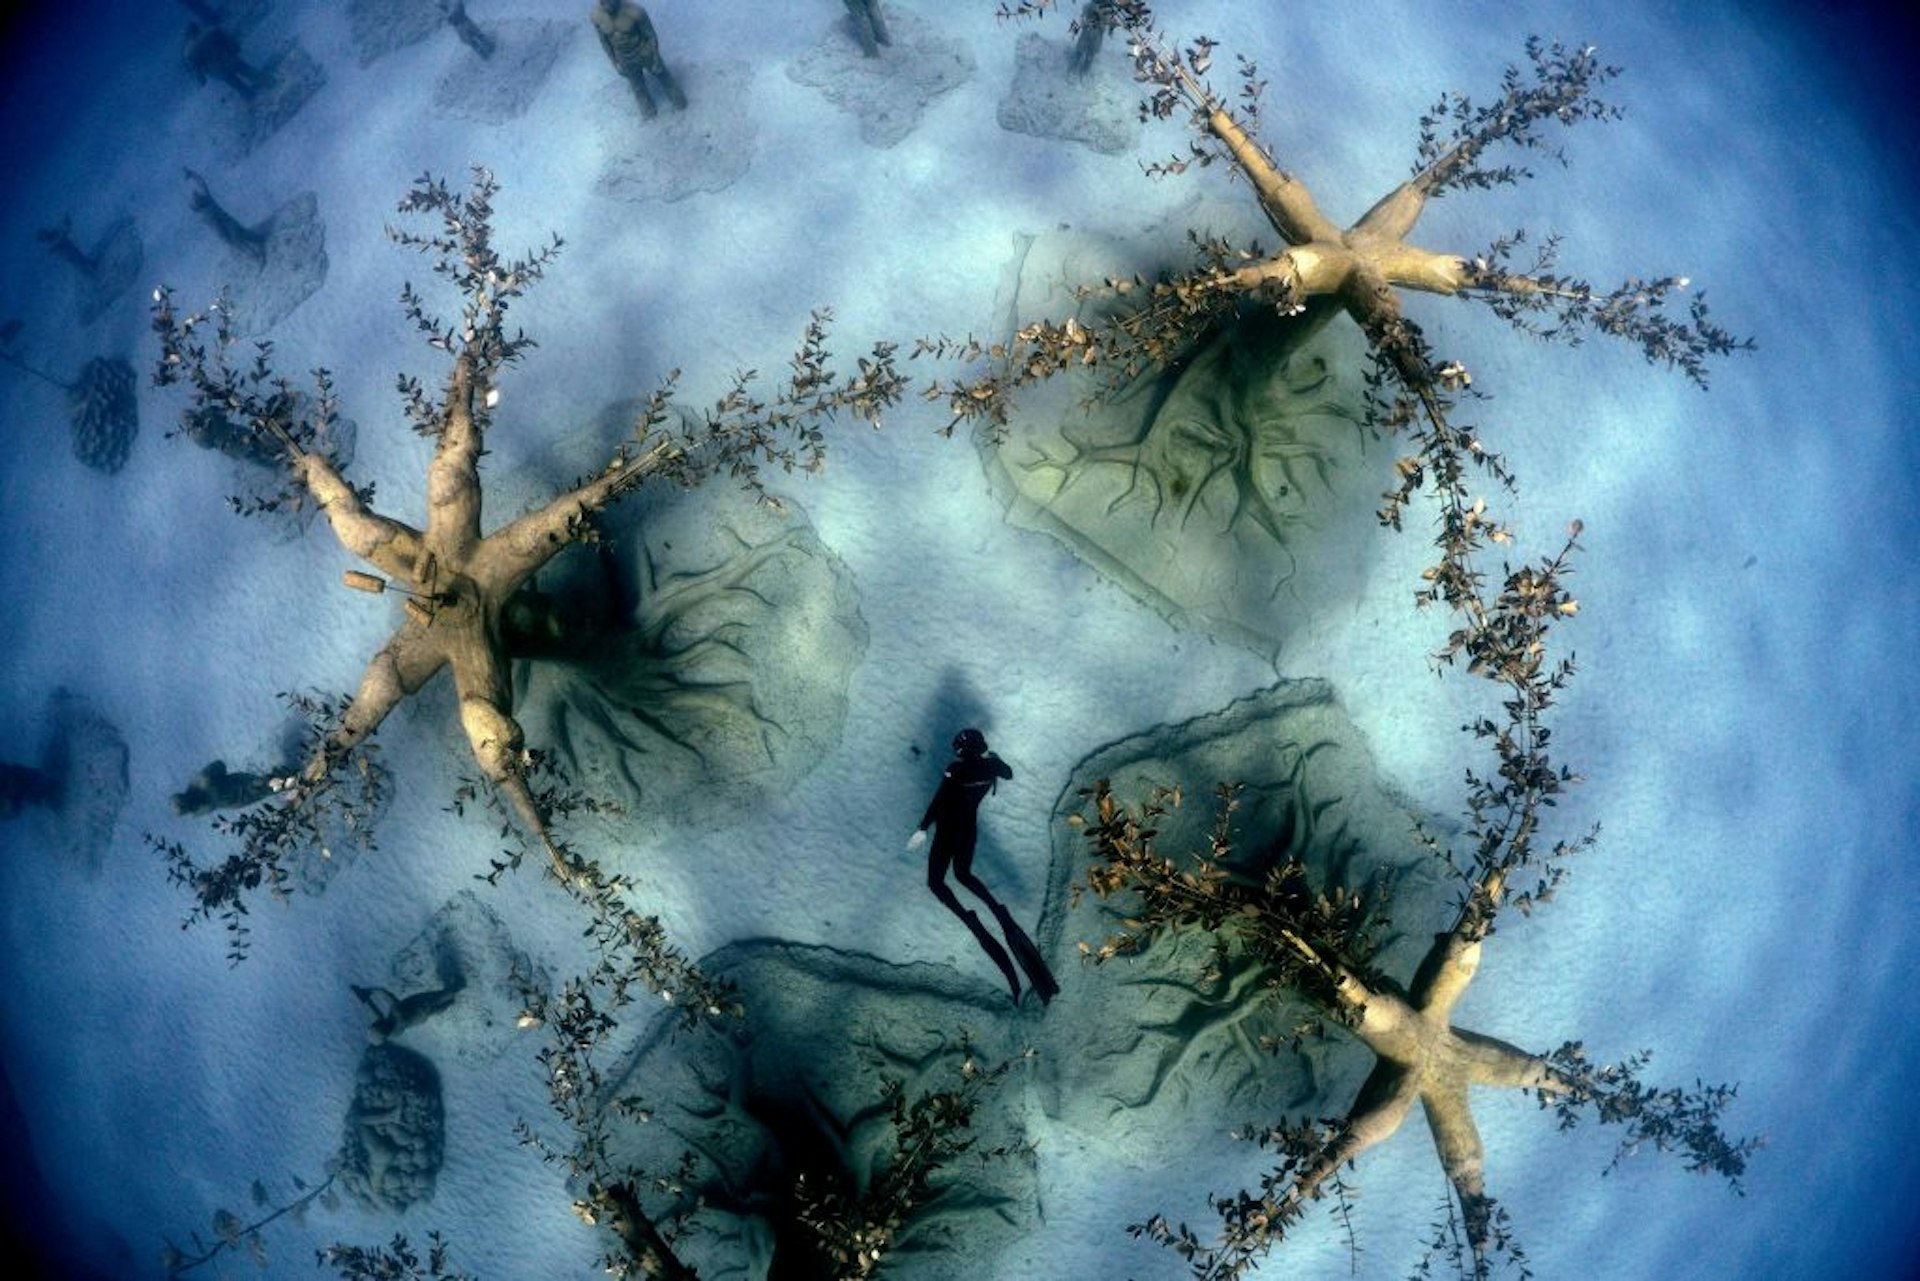 Cypriot freediver Angelos Savvas swims through the MUSAN underwater sculpture park